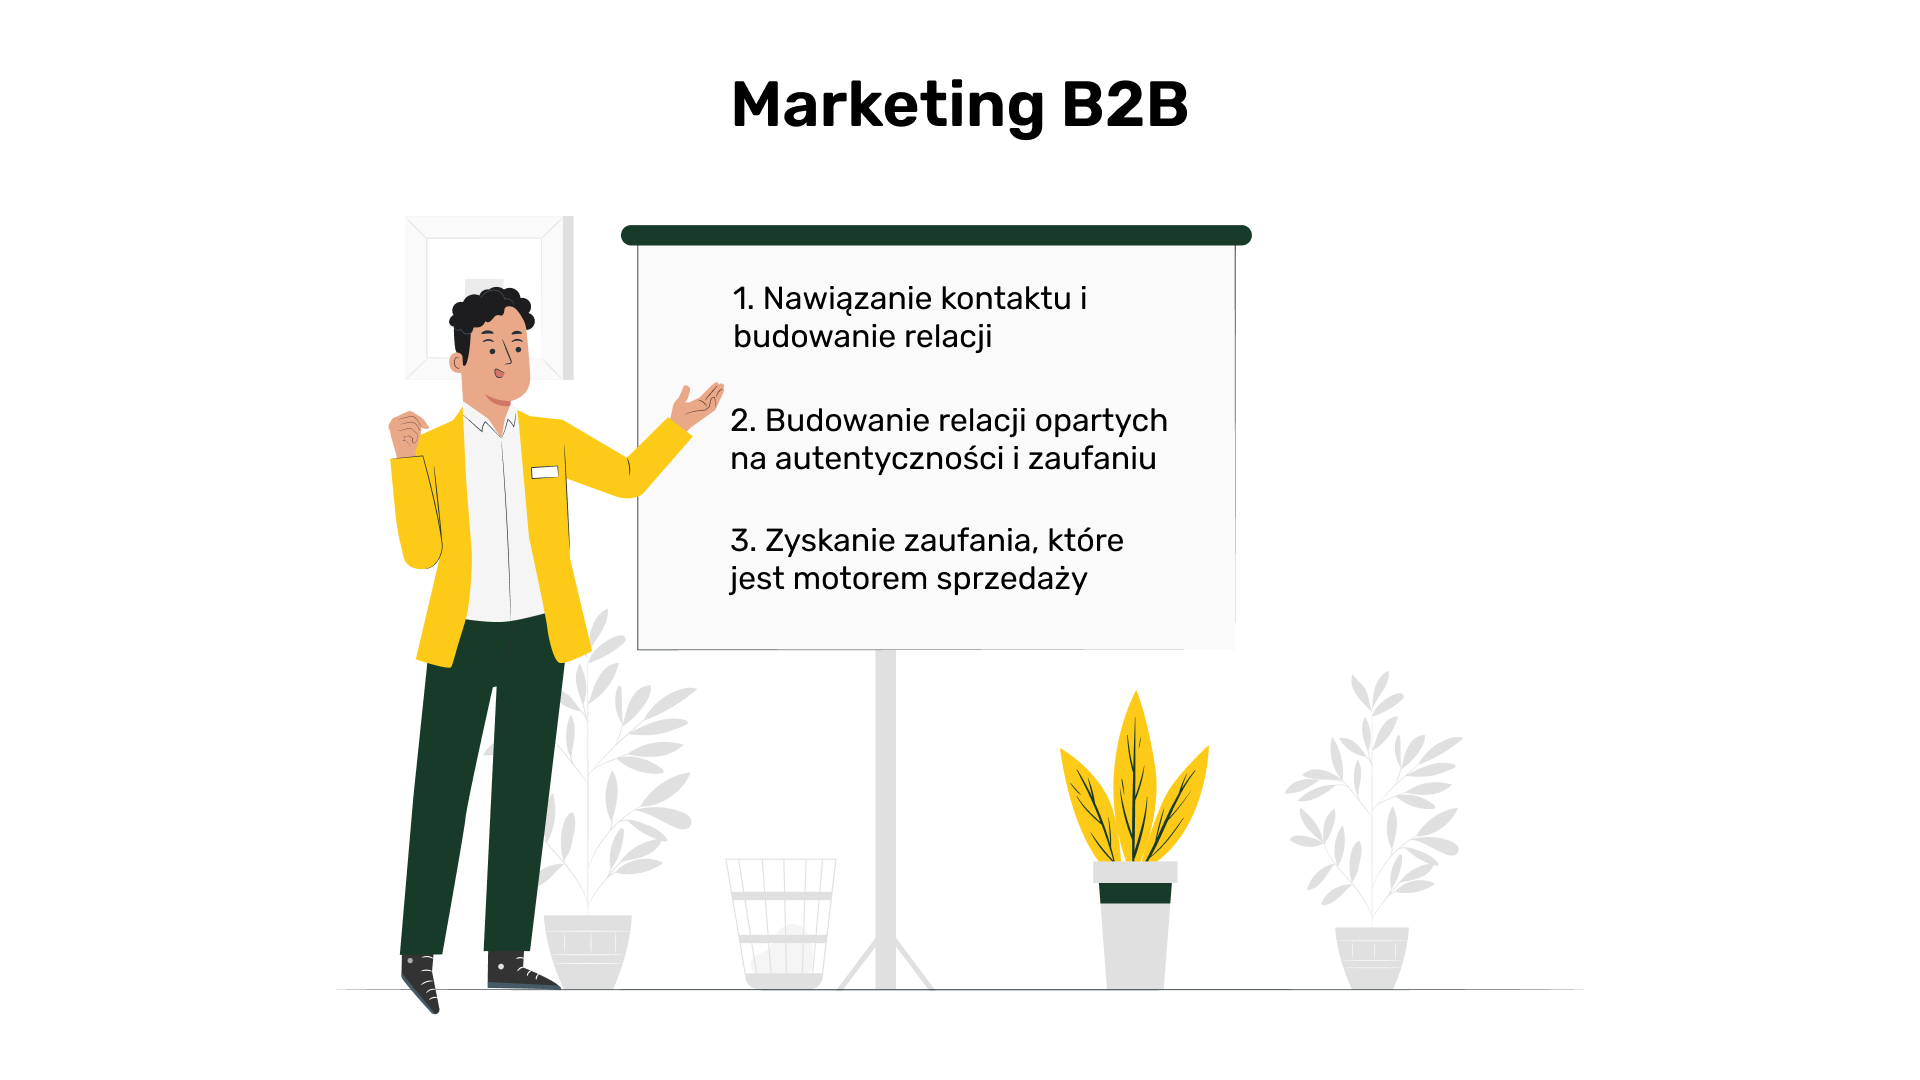 Marketing B2B - najważniejsze działania